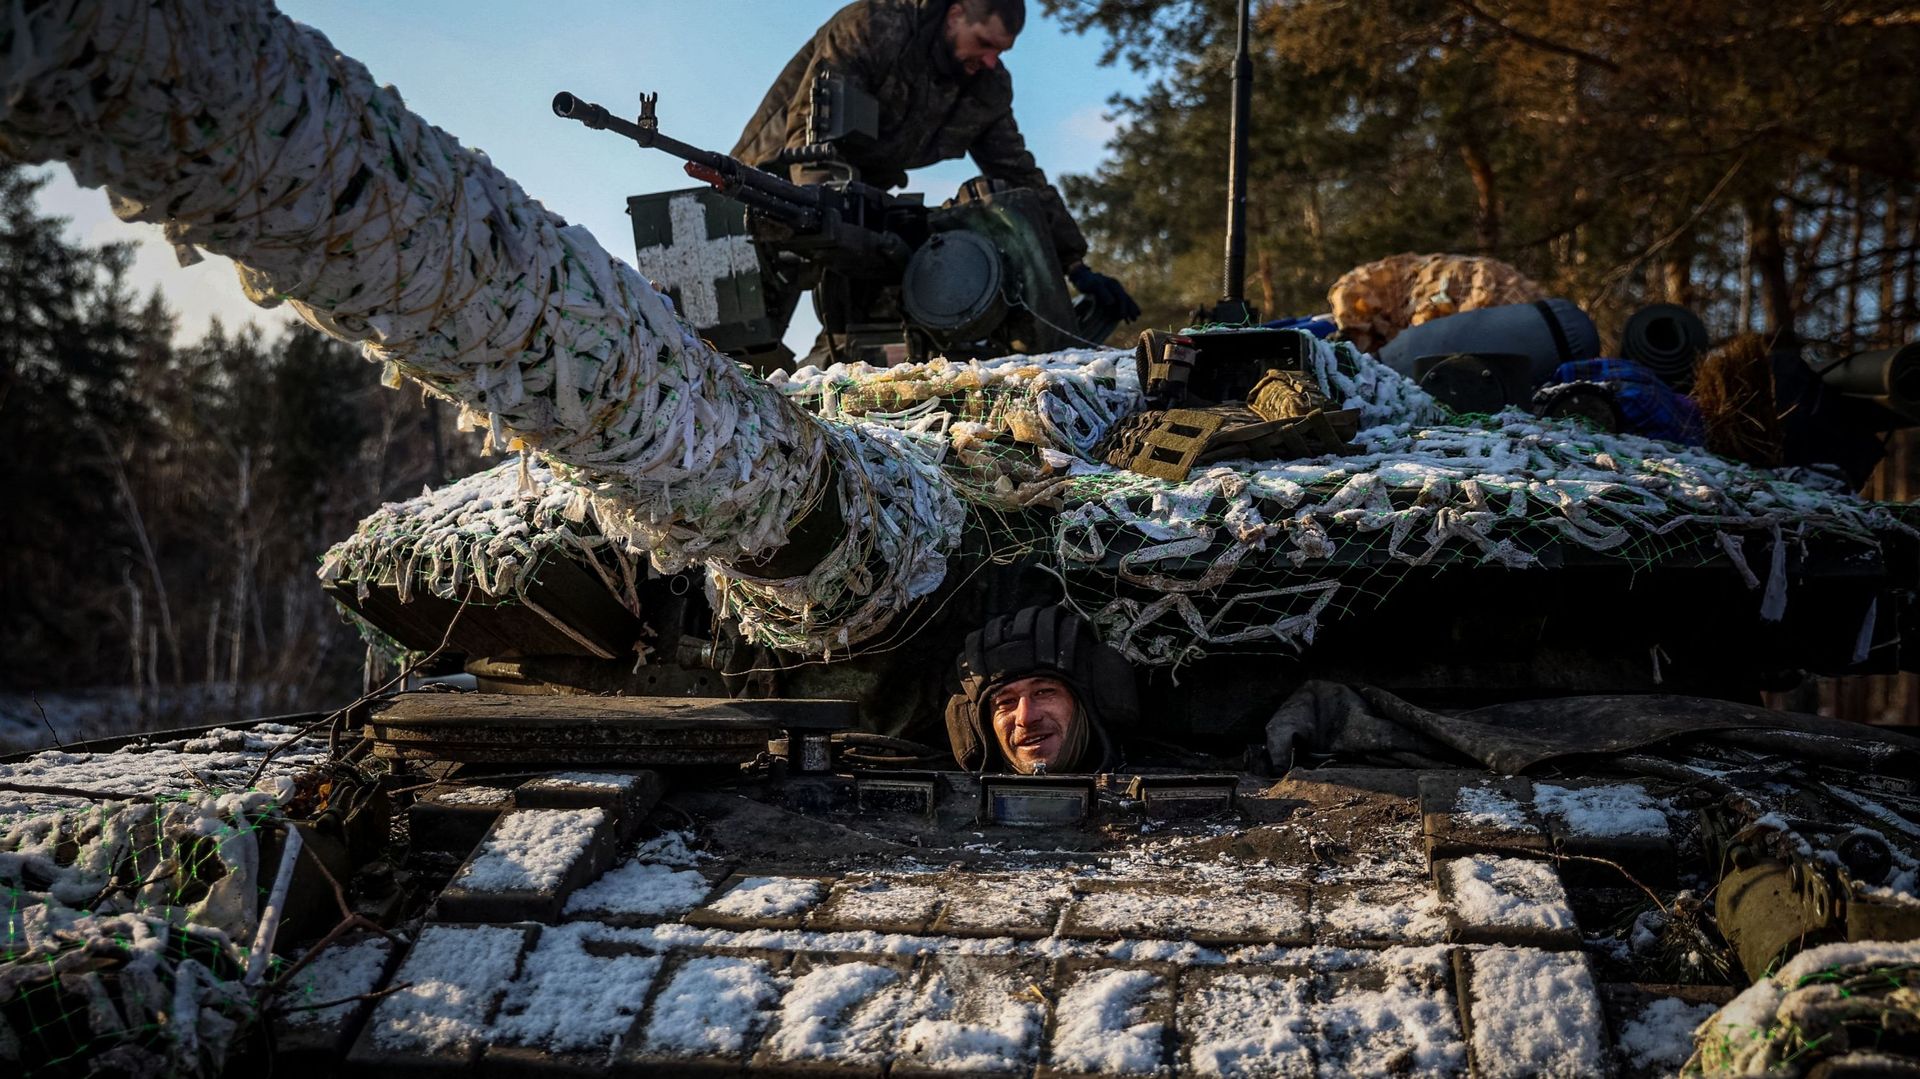 Des membres d’une équipe de chars ukrainiens préparent leur char pour une opération dans la région de Donetsk, le 22 février 2023, dans le cadre de l’invasion militaire de la Russie en Ukraine.